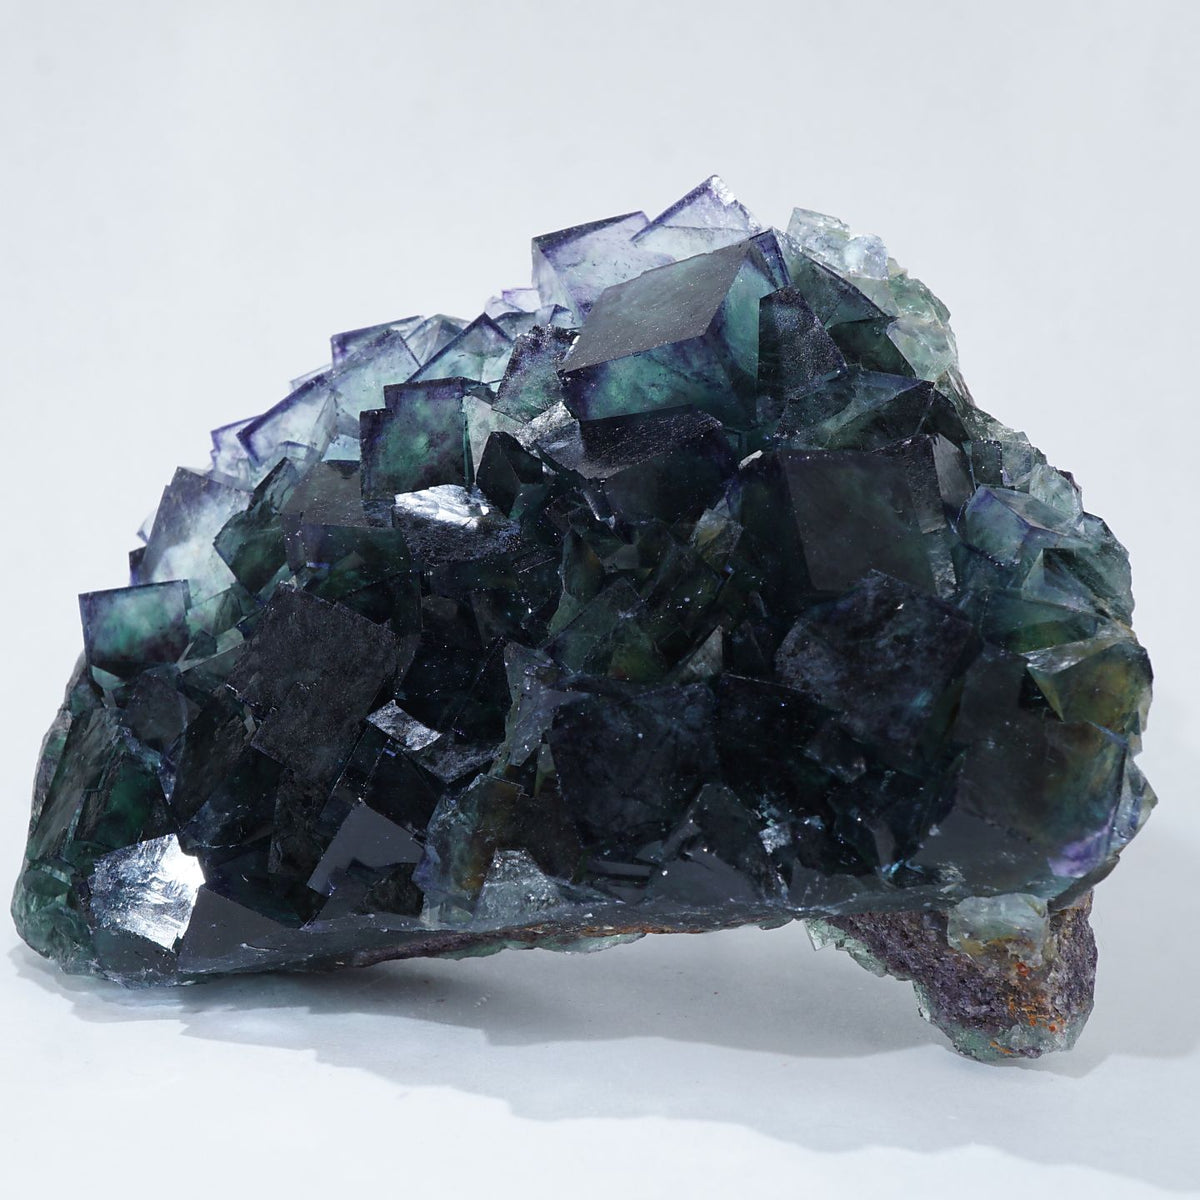 ナミビア産 Okorusu産フローライト – 天然石ハッピーギフト